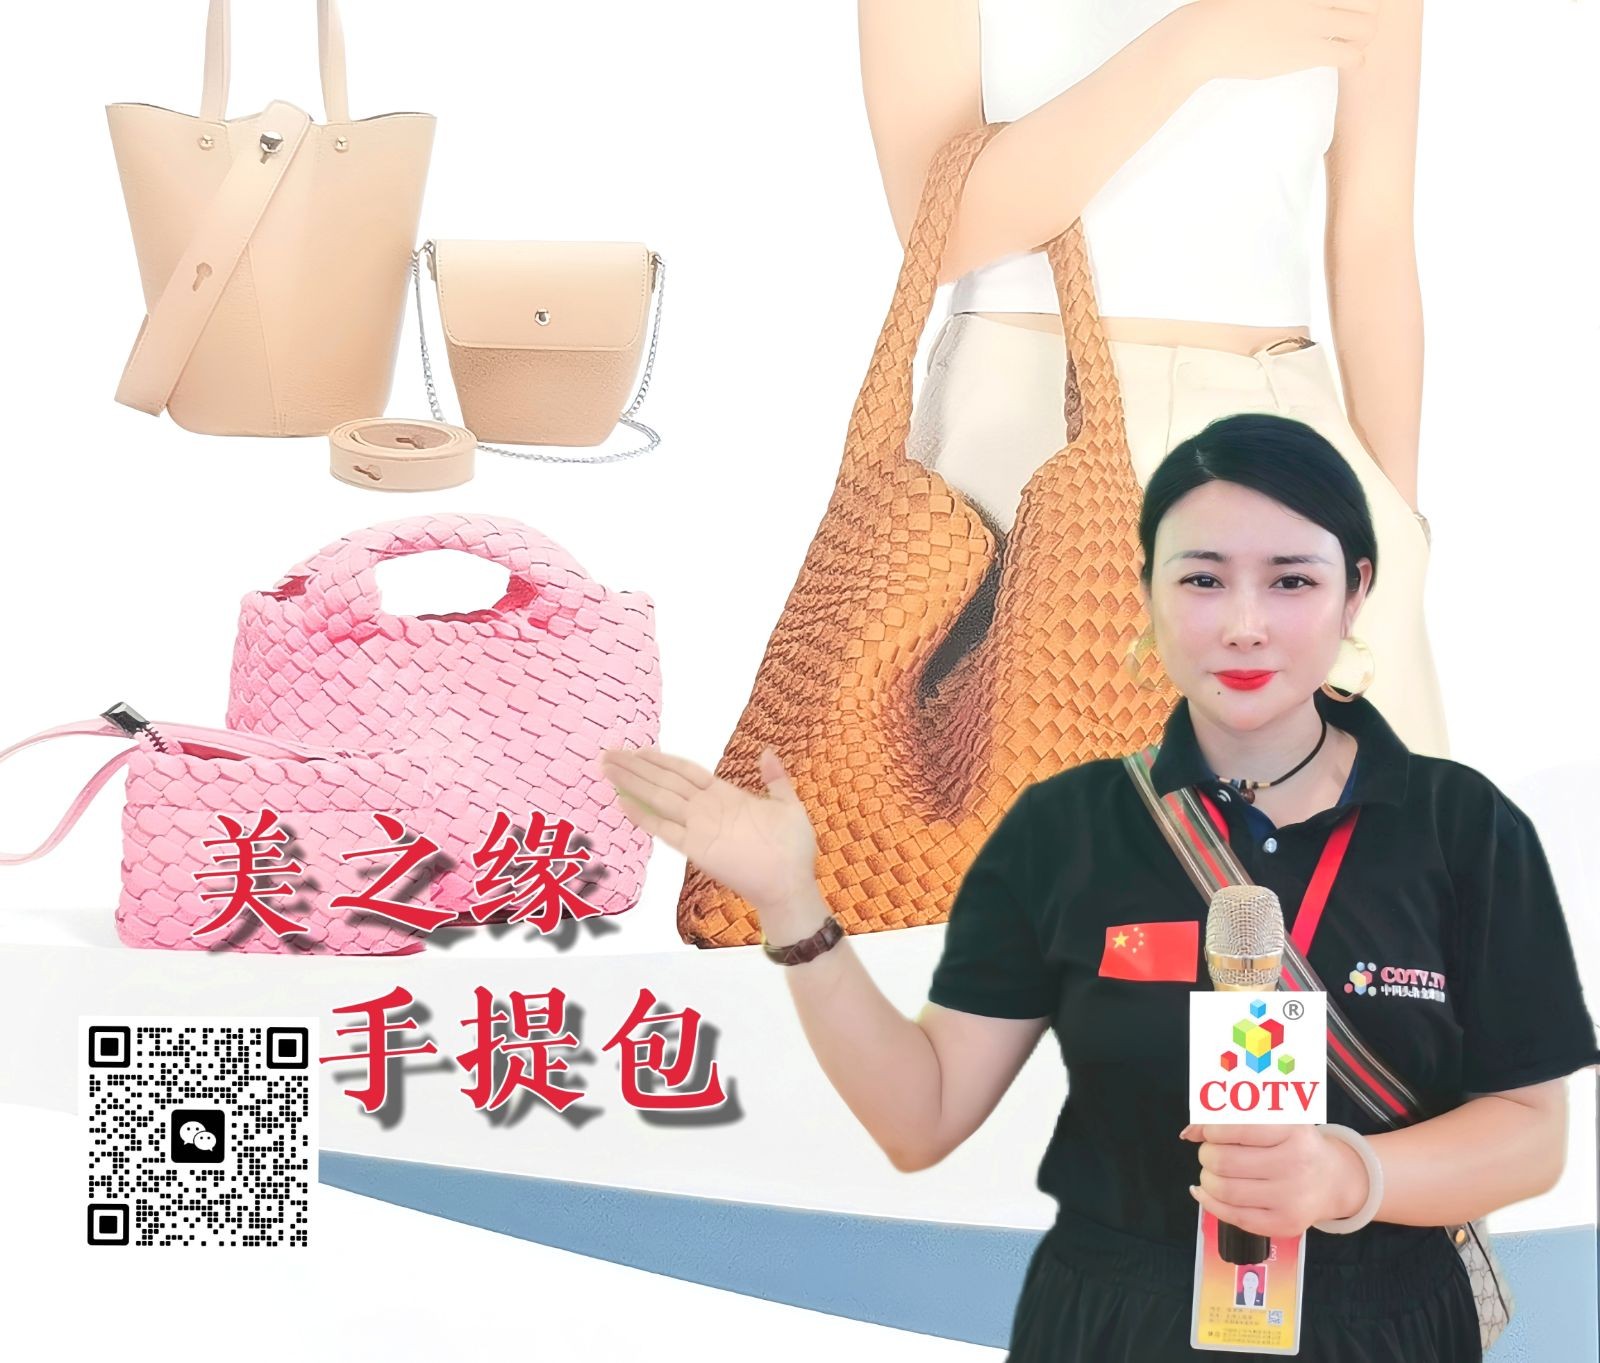 COTV全球直播-广州美之缘商贸有限公司专业研发设计、加工生产、经营销售：各种手提包、挎包、背包等新潮系列产品，欢迎大家光临！